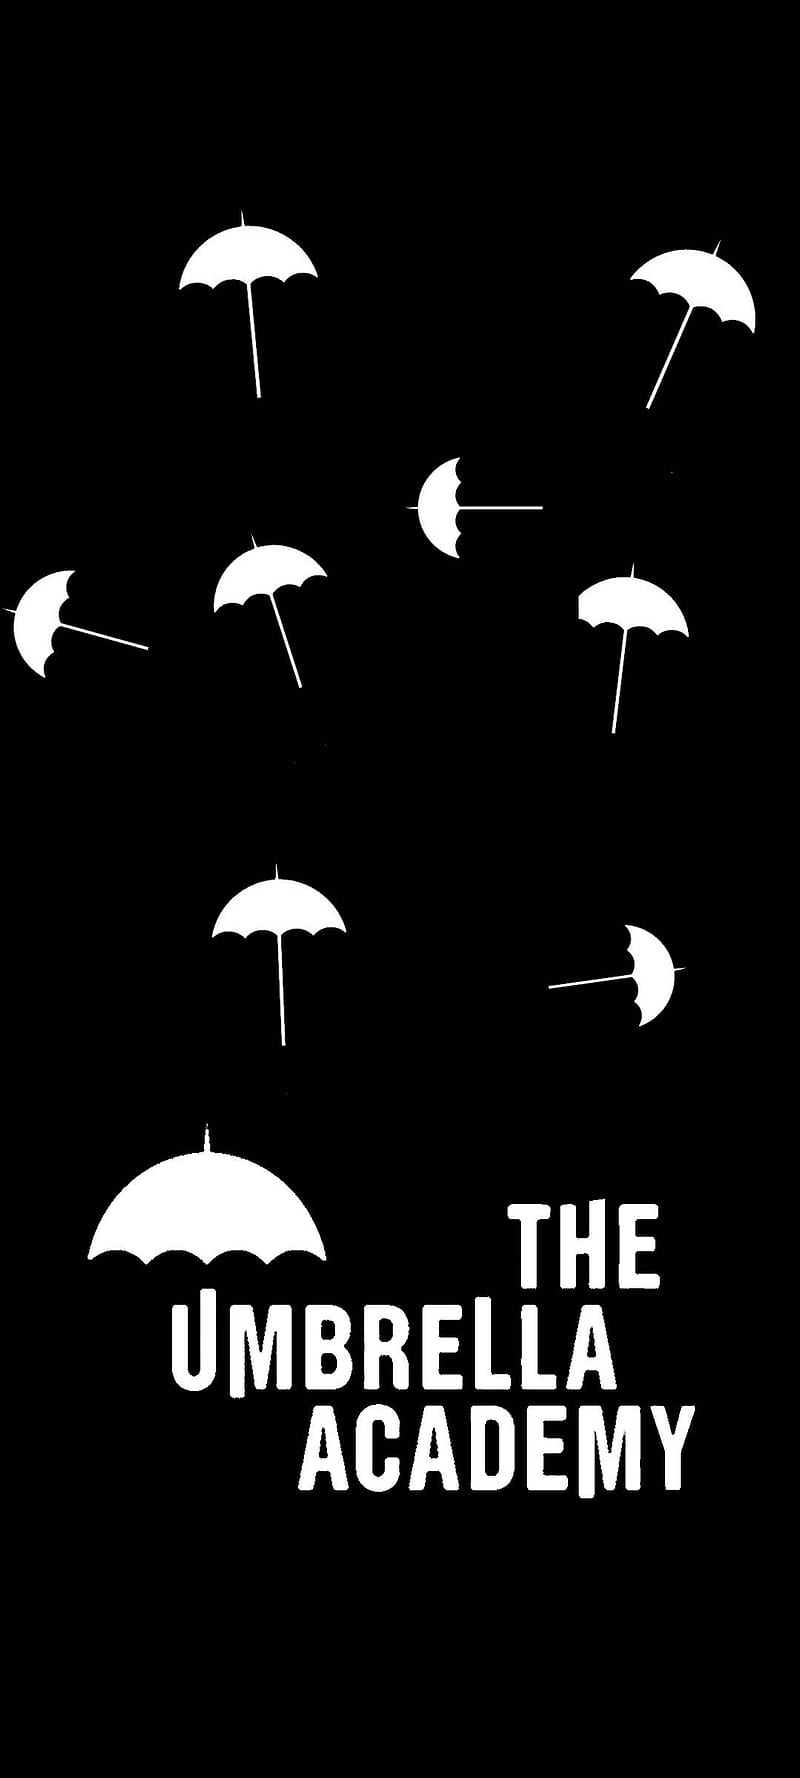 The umbrella academy, the umbrella, HD phone wallpaper